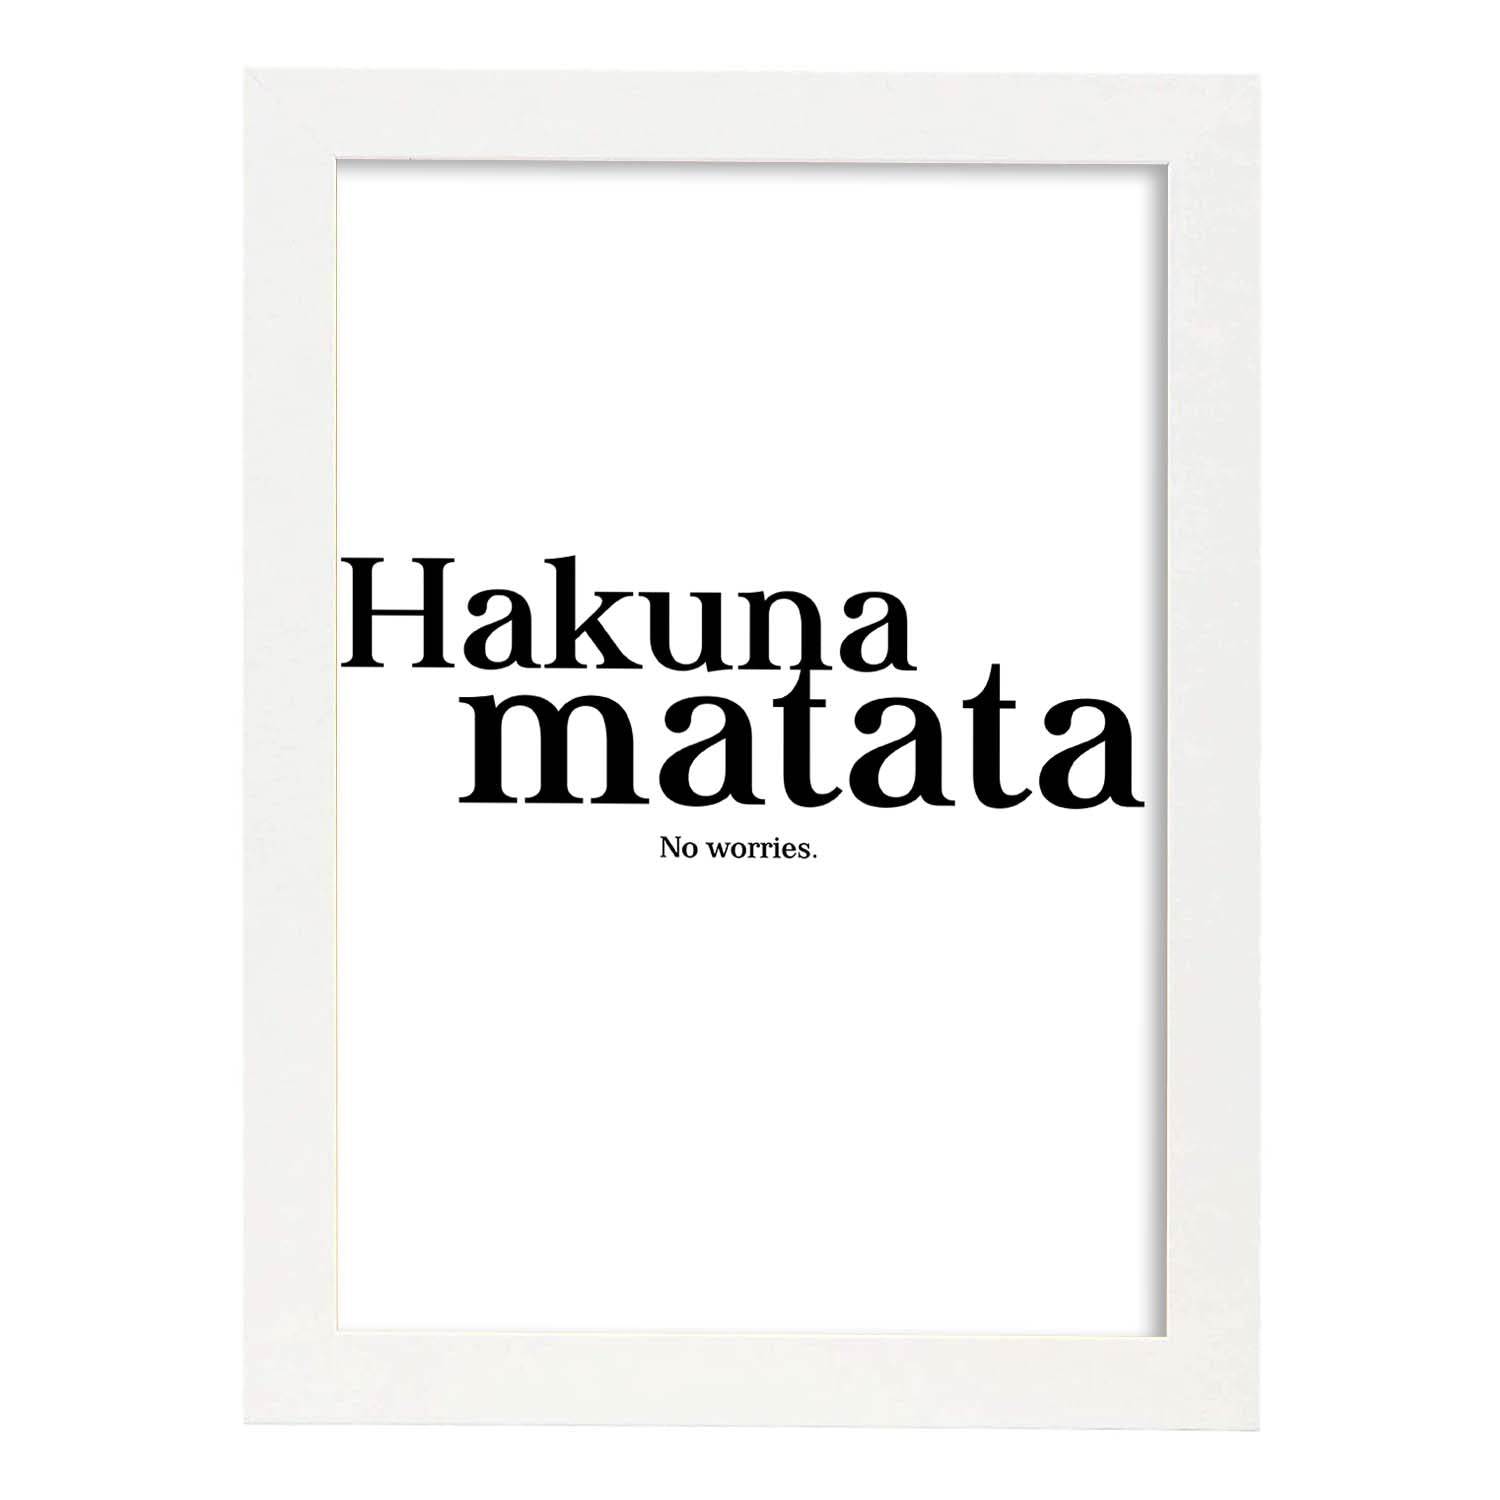 Lamina artistica decorativa con ilustración de hakuna matata estilo Mensaje inspiracional-Artwork-Nacnic-A3-Marco Blanco-Nacnic Estudio SL